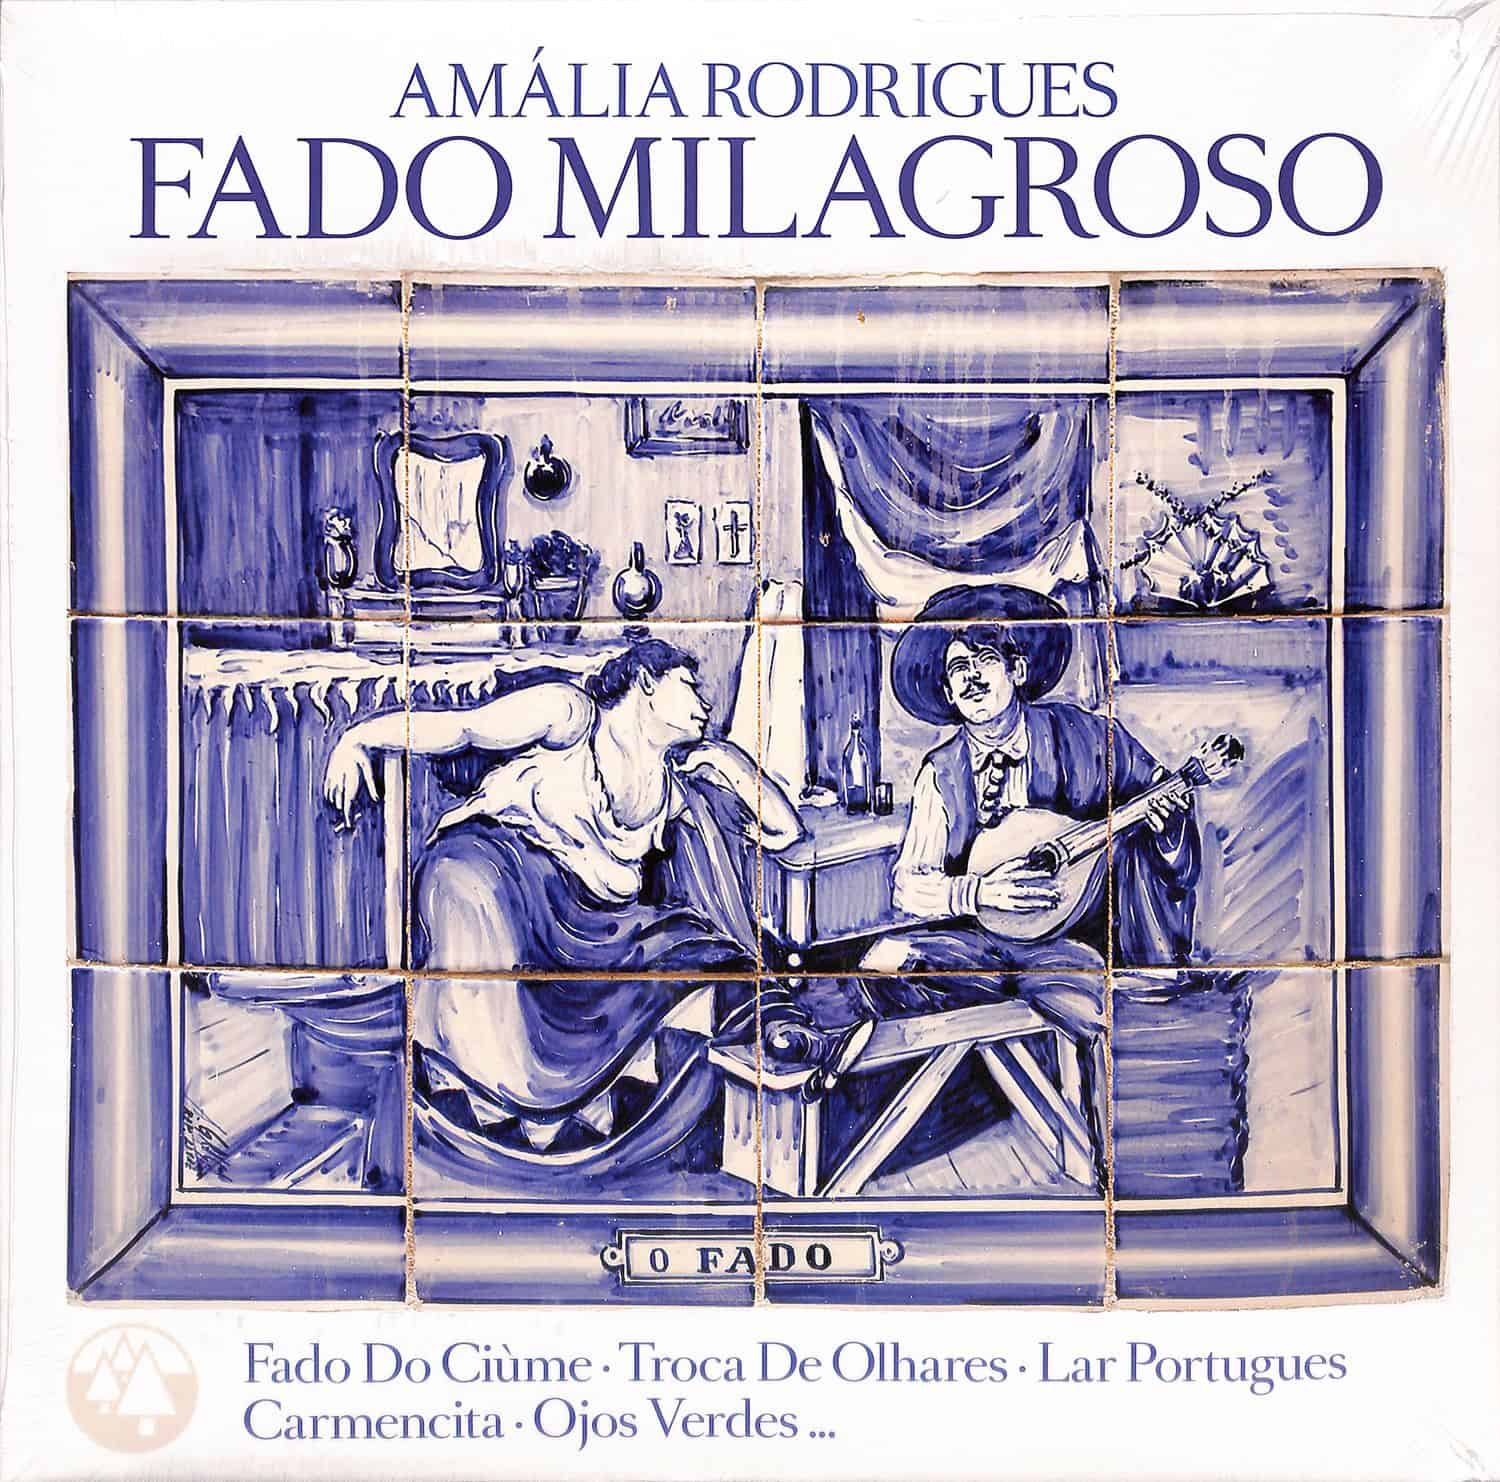 Amalia Rodrigues - FADO MILAGROSO 